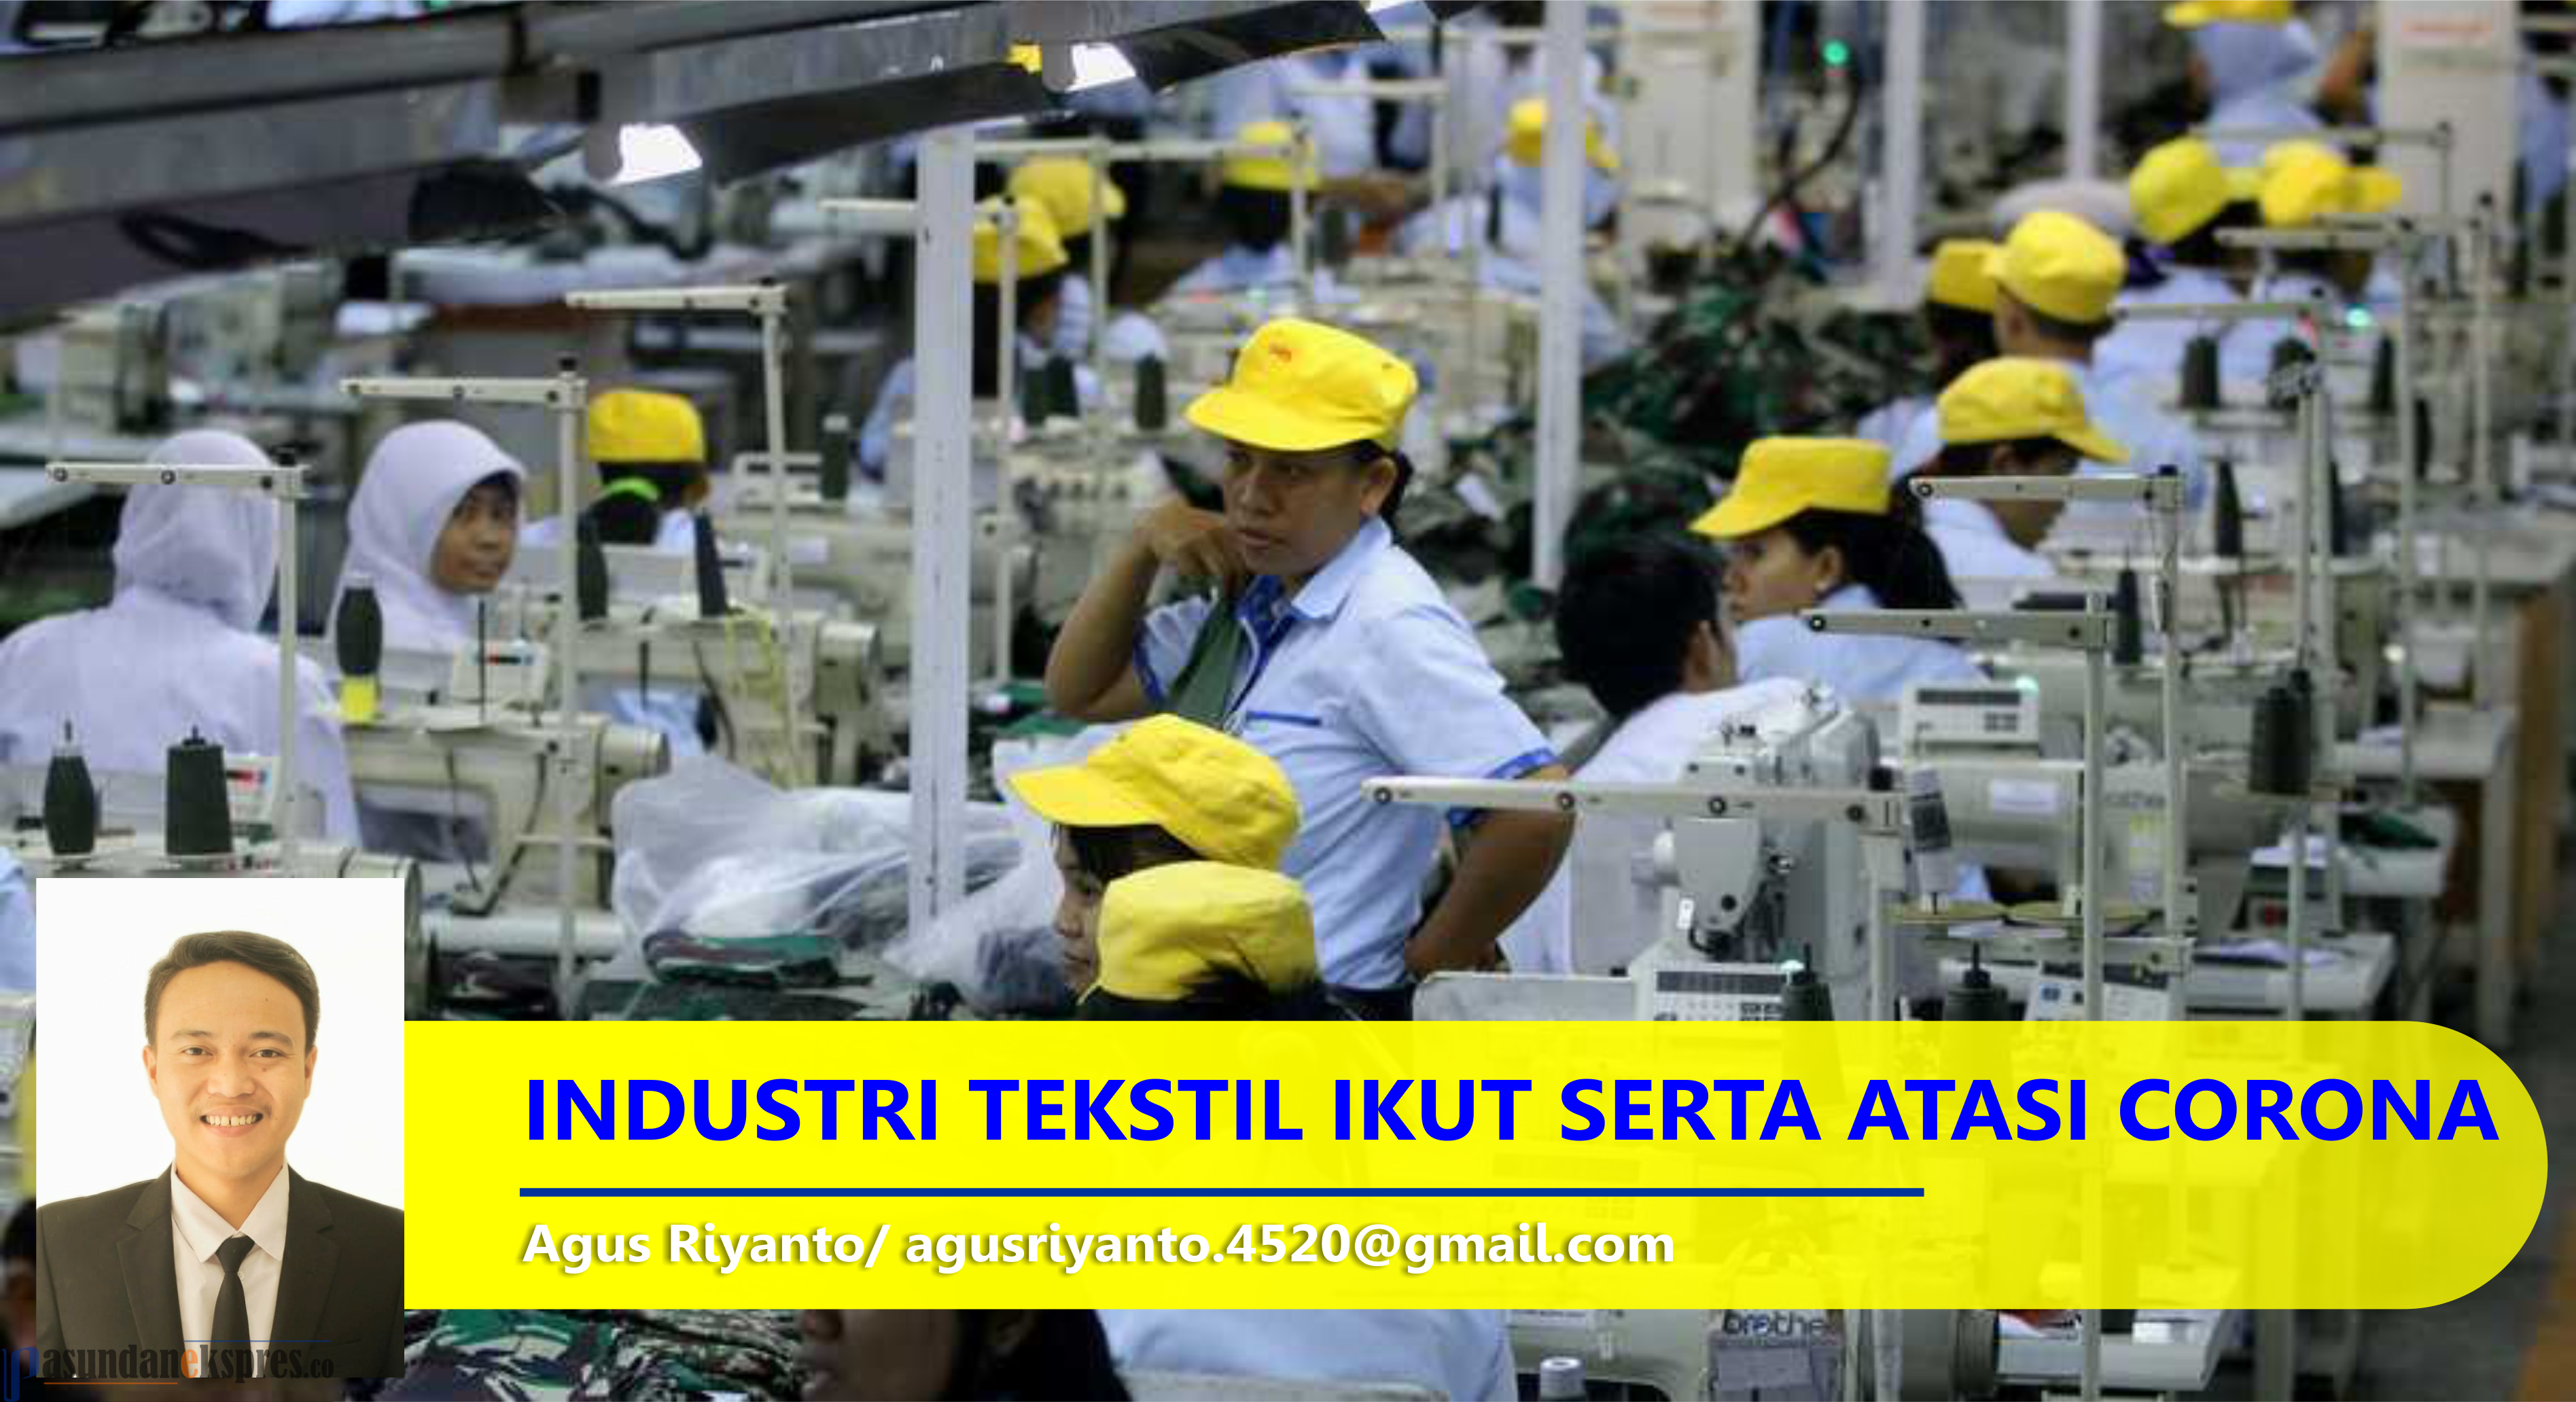 Atasi Corona, Pemerintah Dorong Industri Tekstil Produksi APD